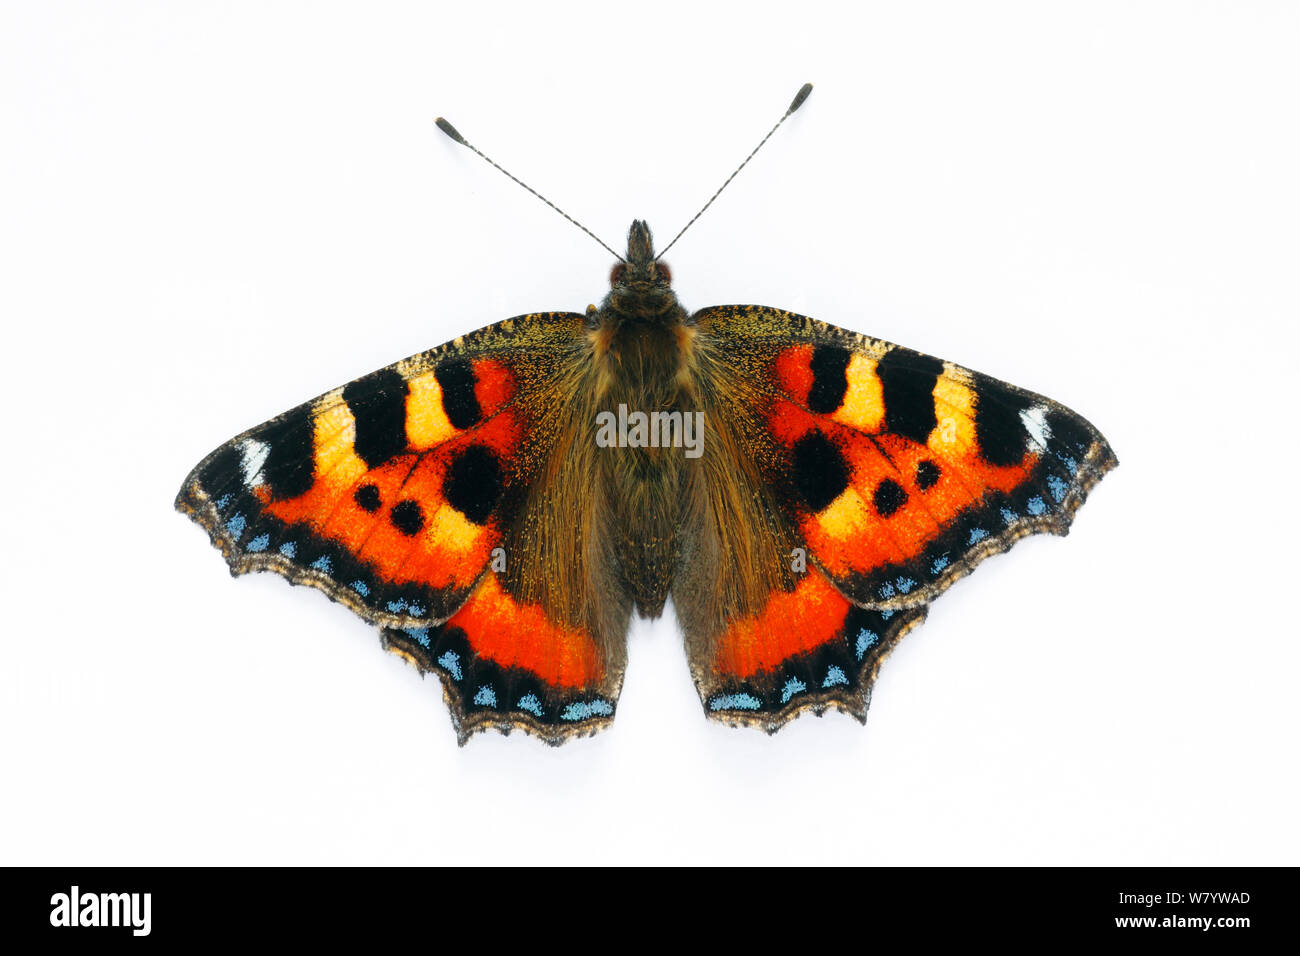 Petit papillon écaille (Aglais urticae) sur fond blanc, captive, sud-ouest de Londres, Royaume-Uni. Juillet. Banque D'Images